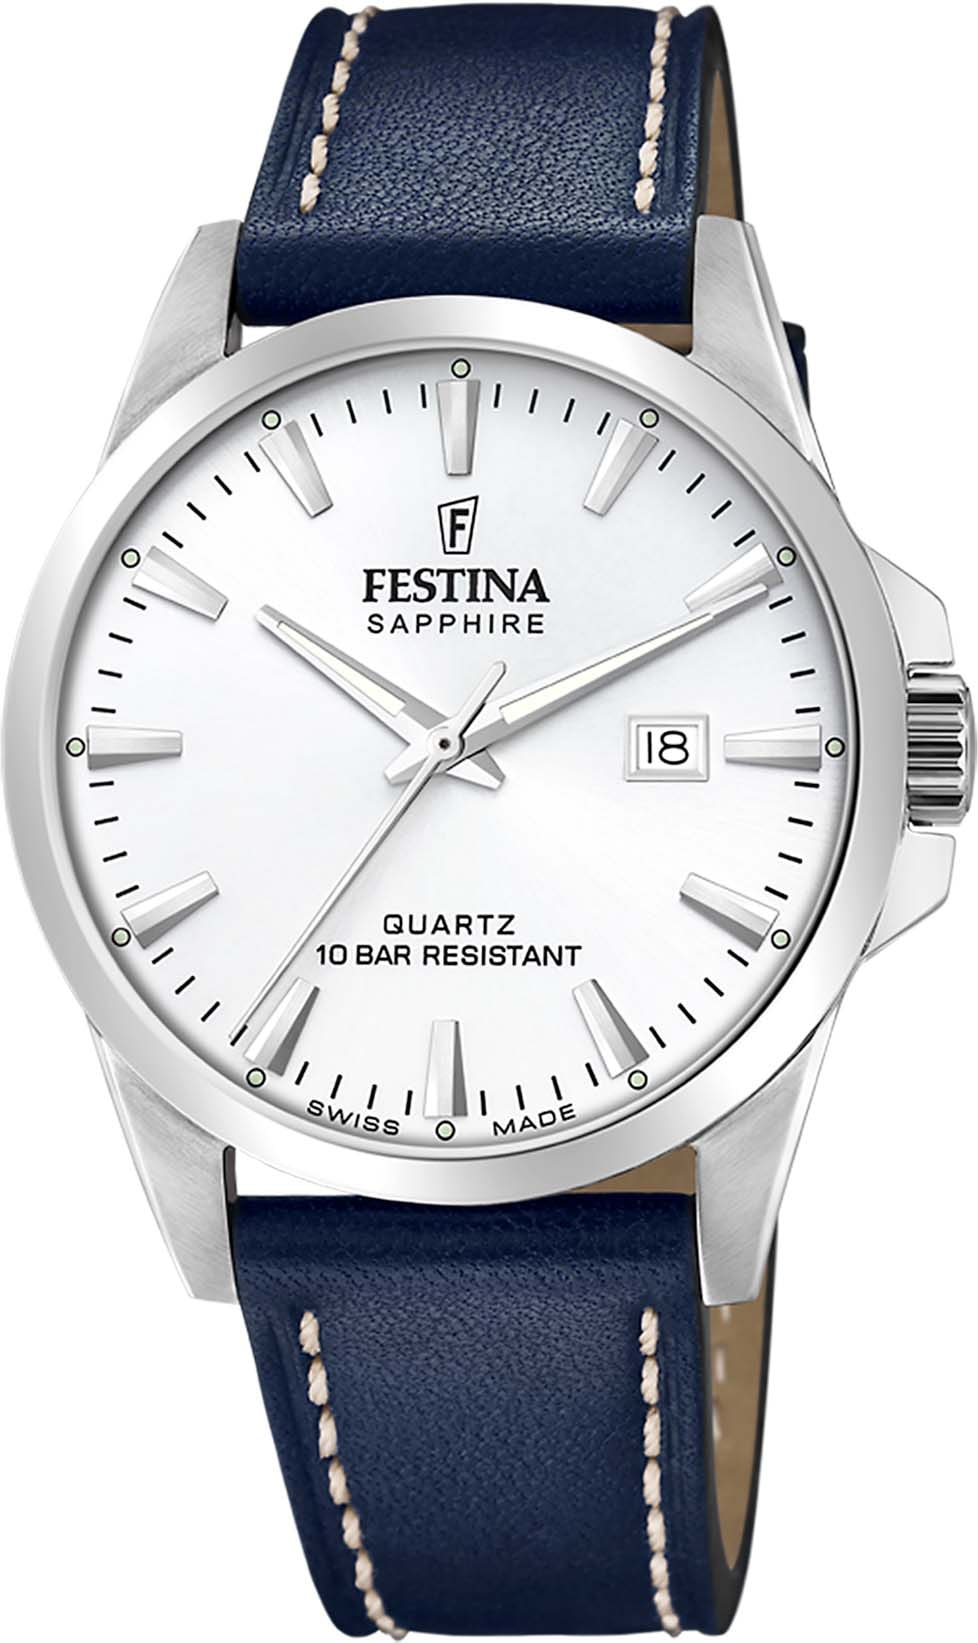 Festina Schweizer Uhr »Swiss Made, F20025/2« online kaufen | I'm walking